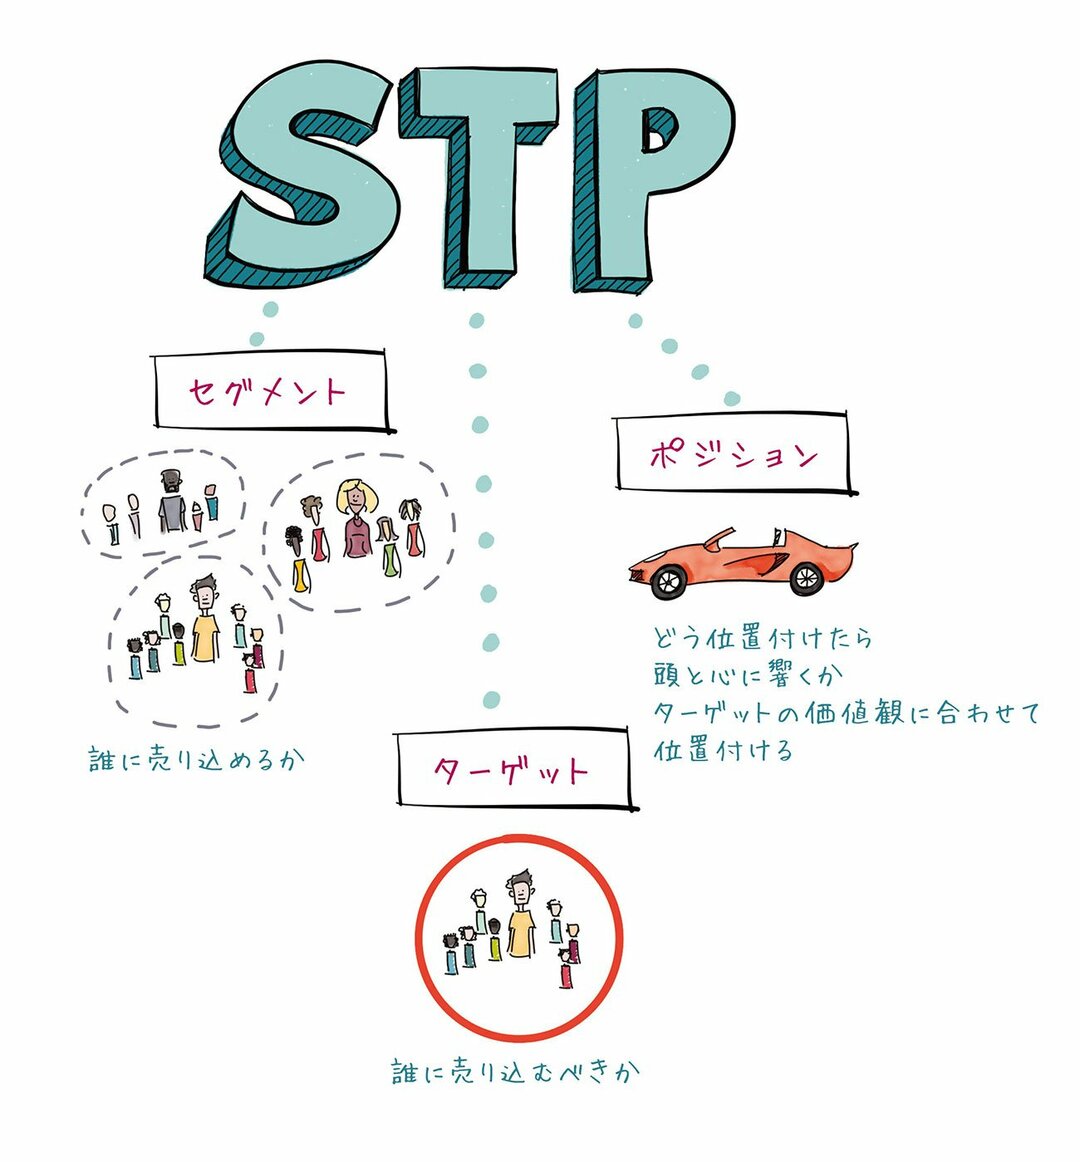 「STP」「階段図」など新たな商品・サービスの潜在顧客を見つける基本の「き」とは？